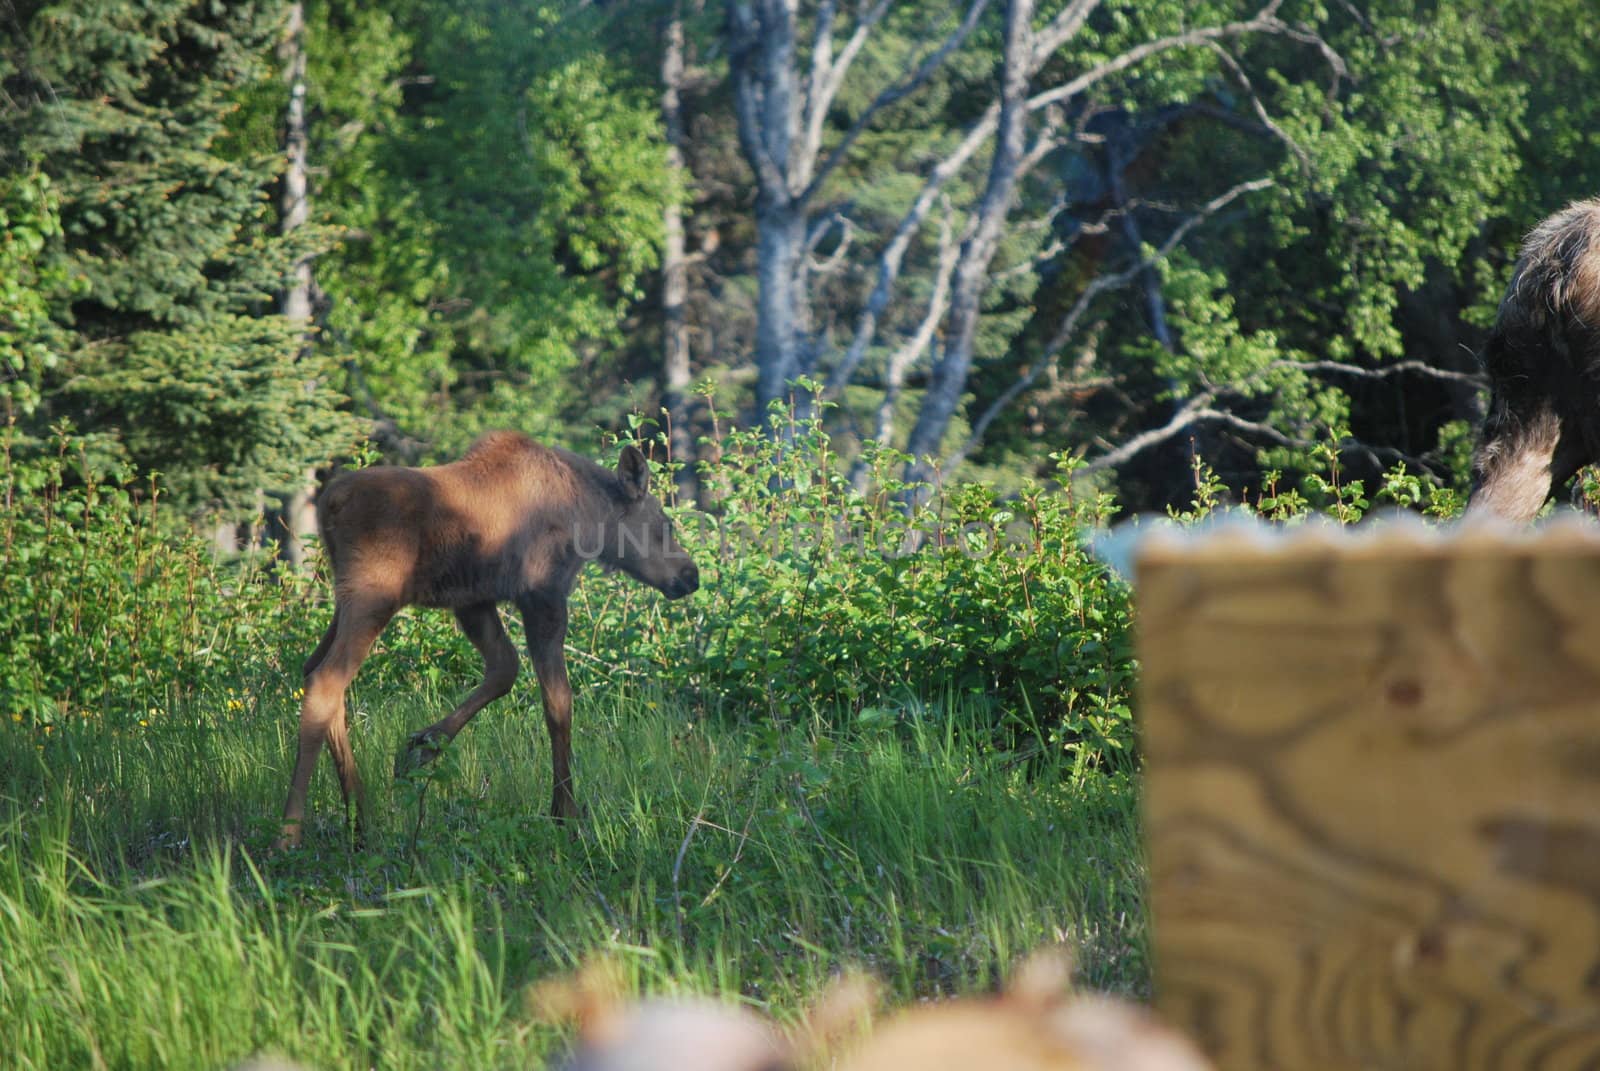 A newborn moose calf in the grass